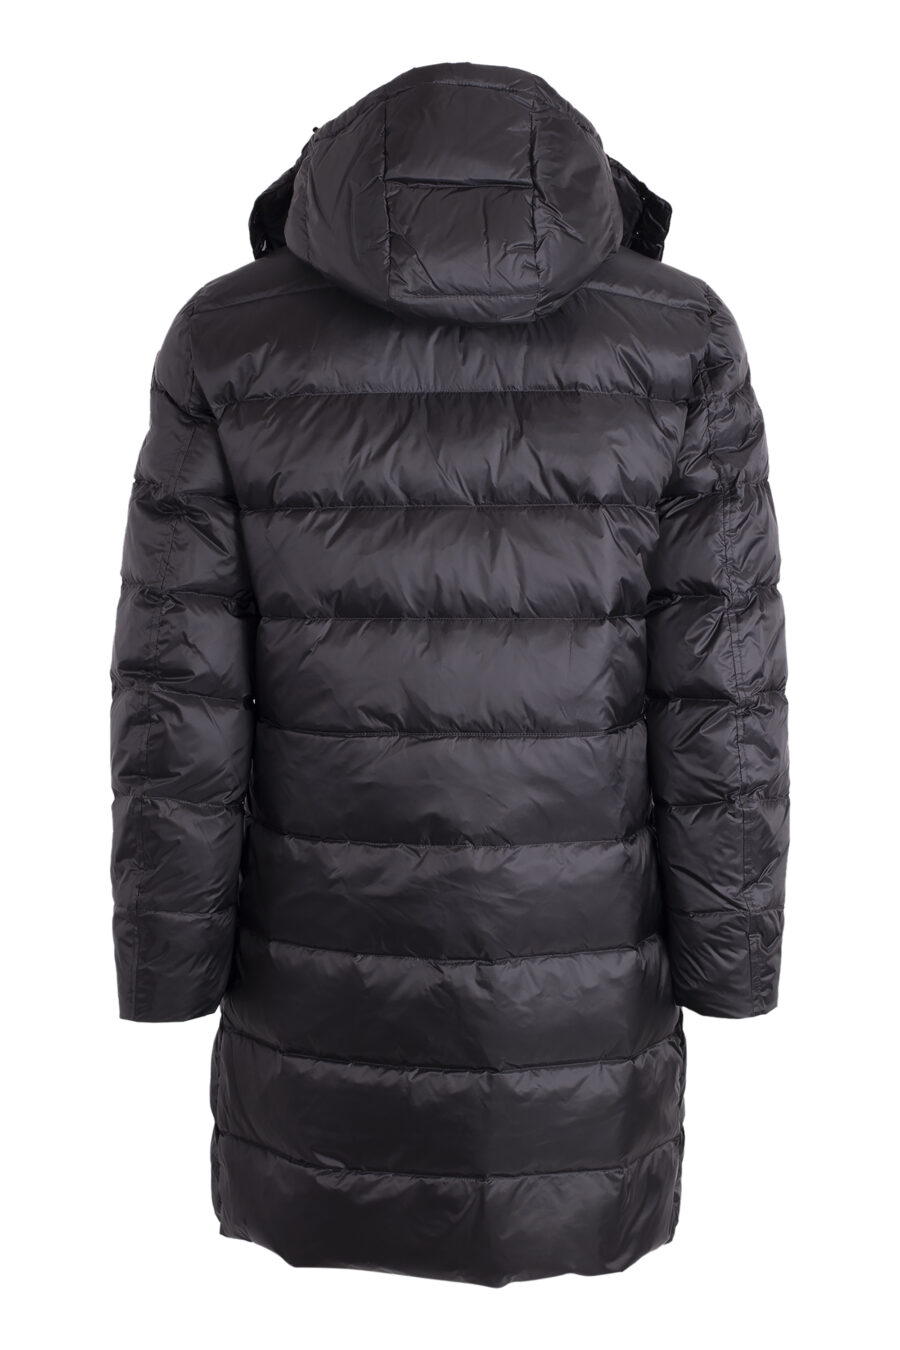 Long black waterproof hooded jacket with brown lining - IMG 4572